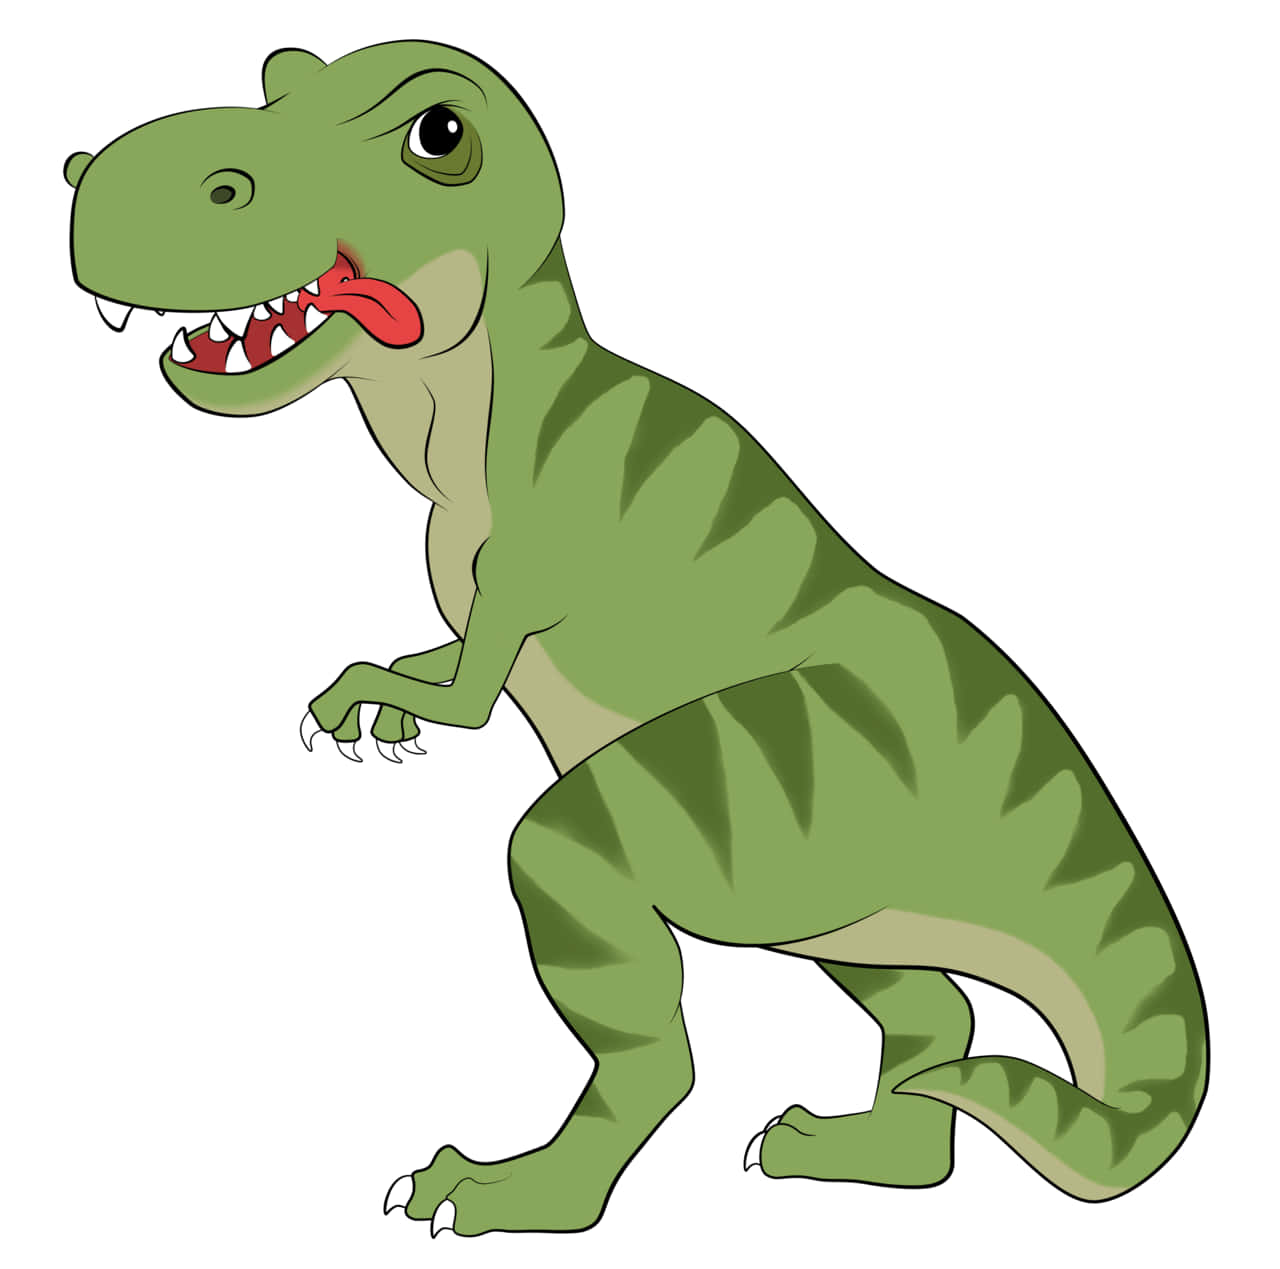 Ettfärgglatt Teckning Av En Tyrannosaurus Rex.